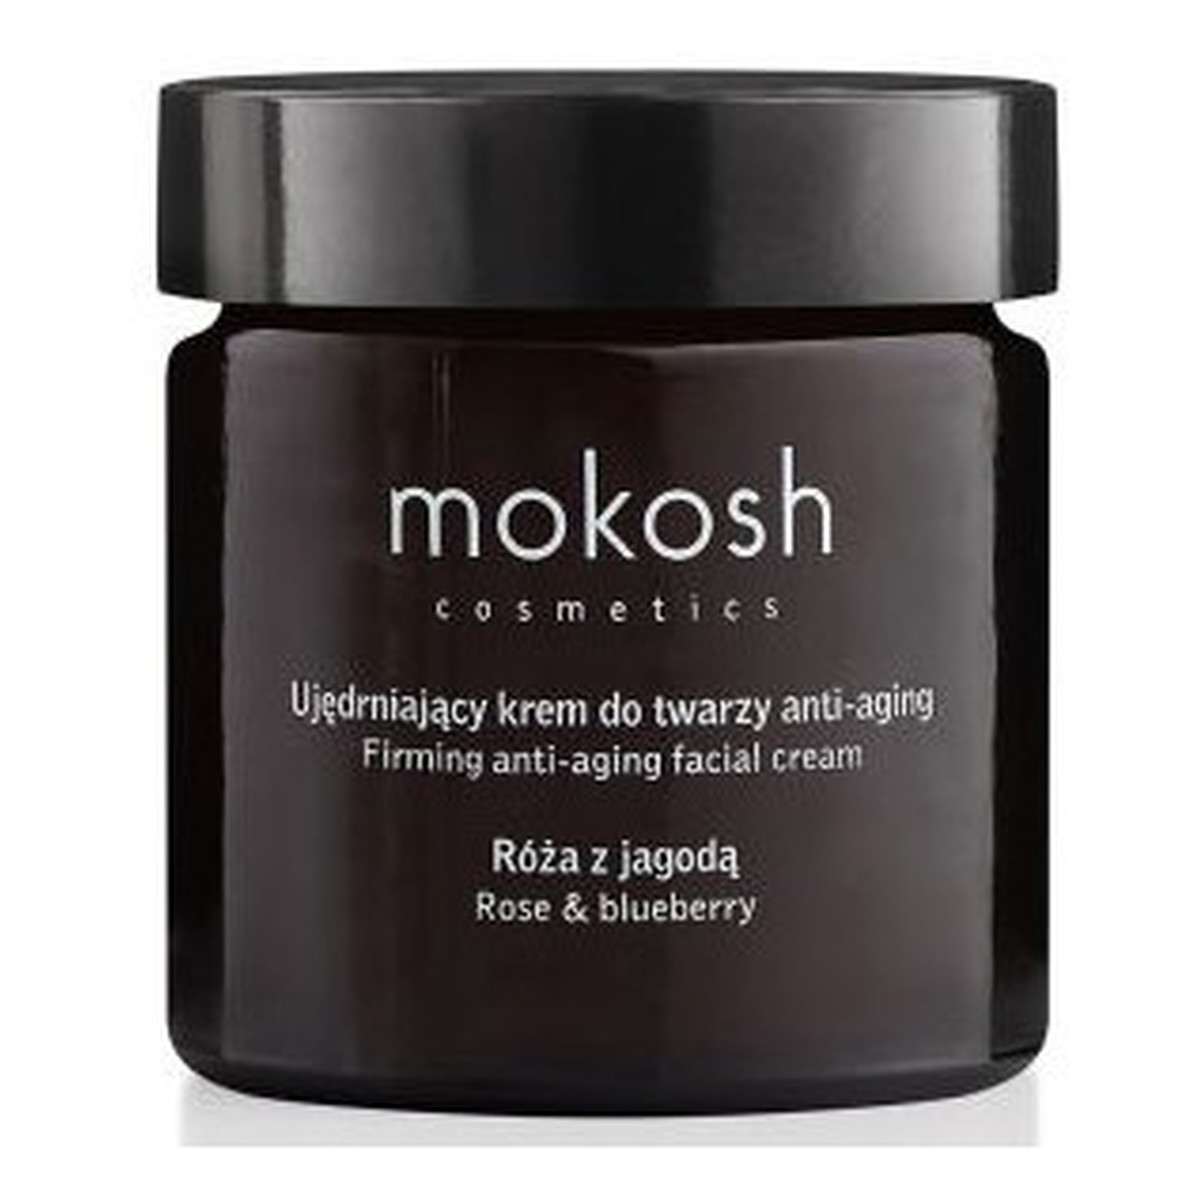 Mokosh Facial Cream Anti-aging Rose & Bluberry Ujędrniający krem do twarzy anti-aging Róża z Jagodą 60ml